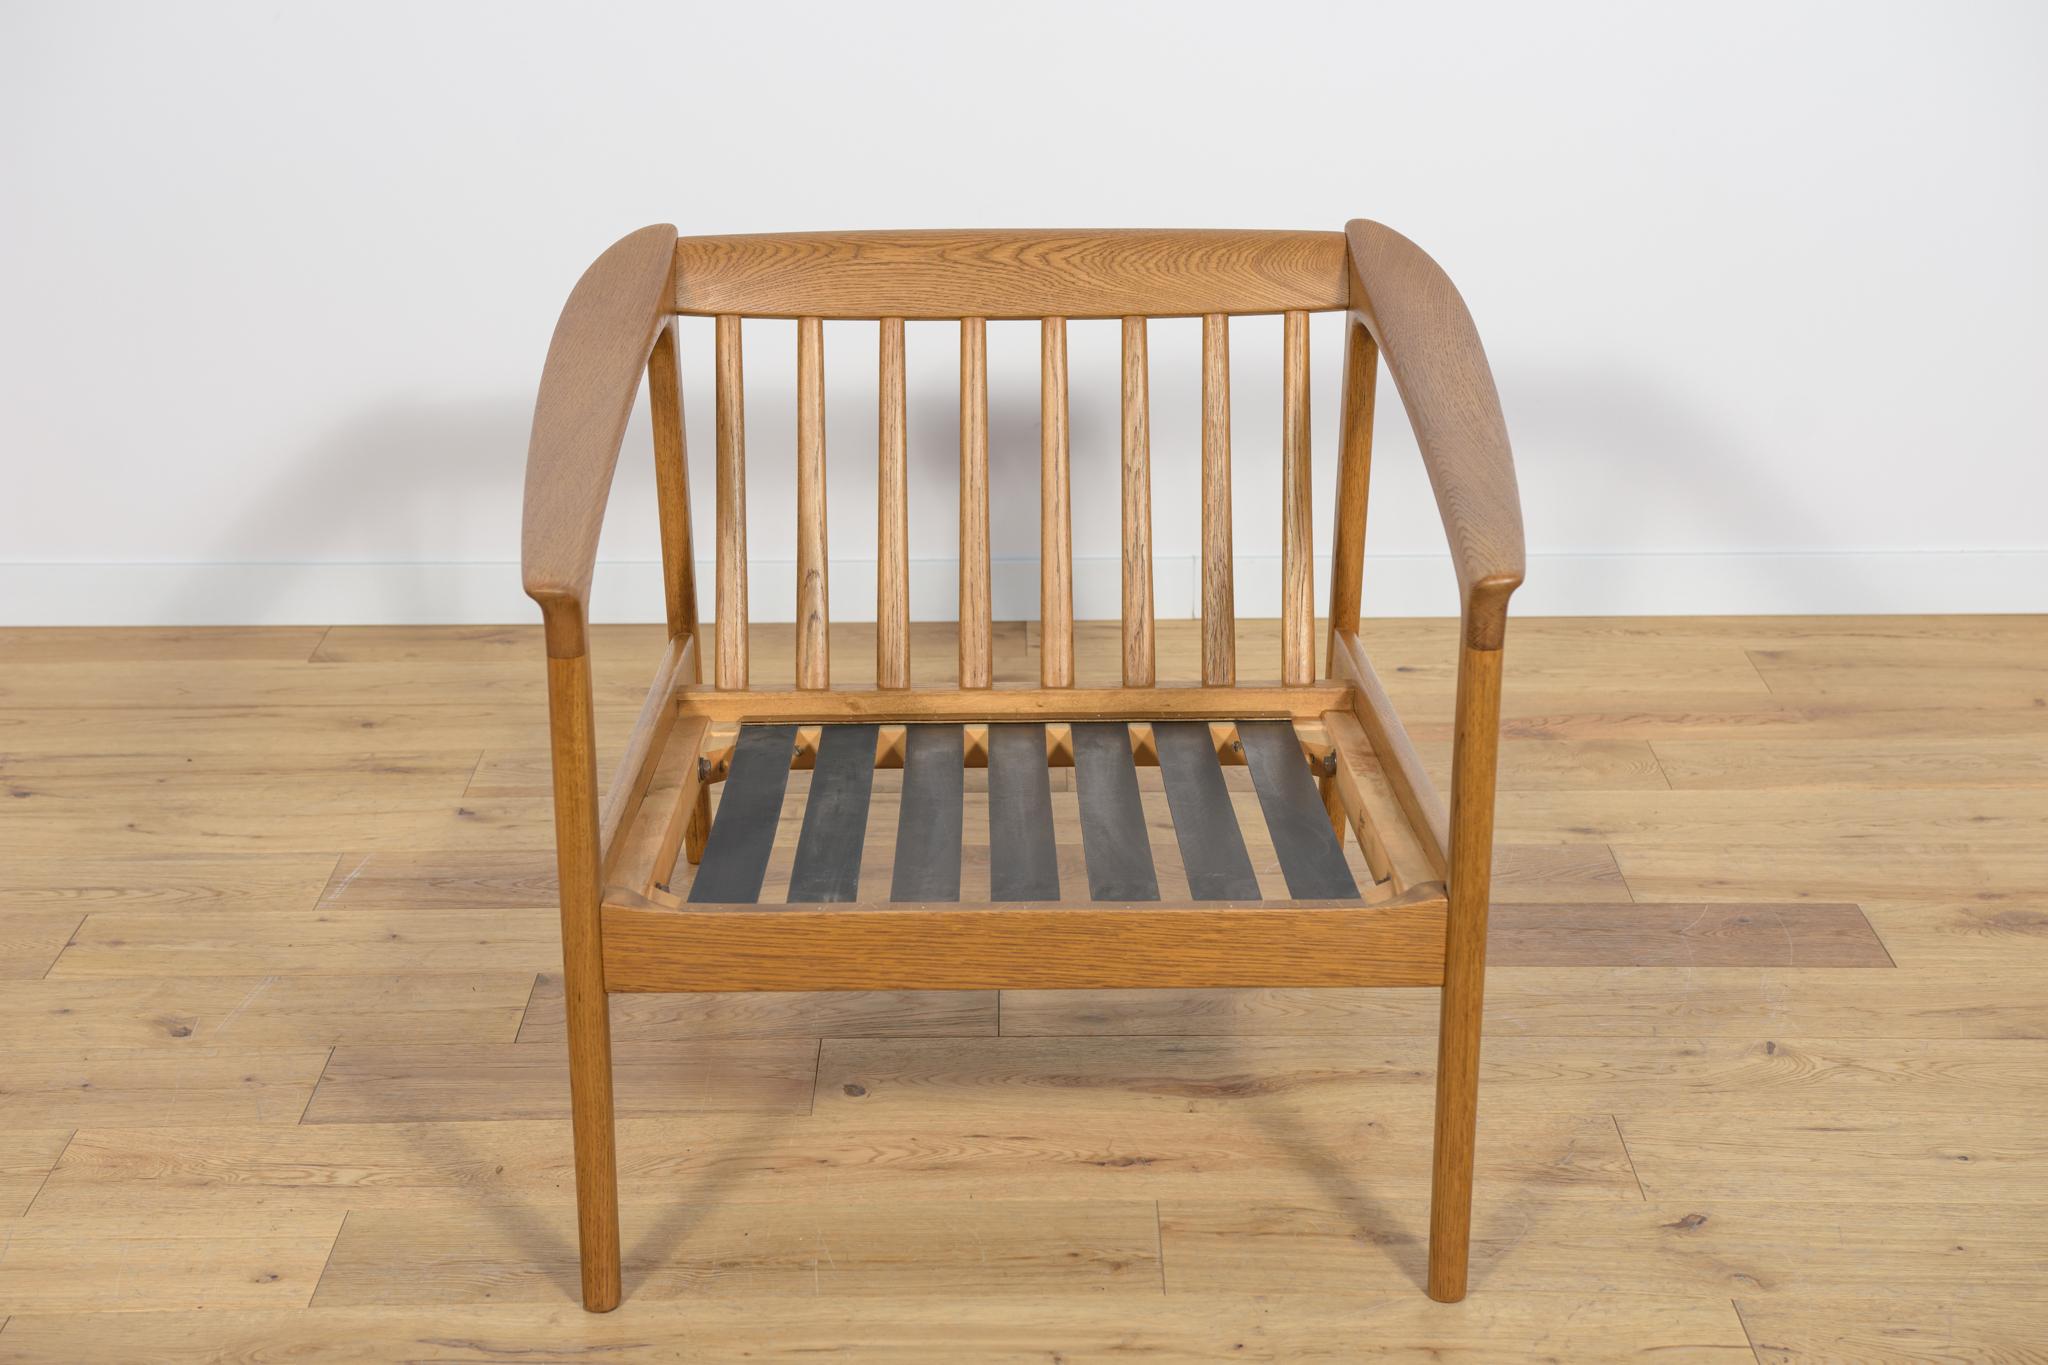 Fauteuil Monterey /5-161 conçu par Folke/One, produit par le fabricant suédois Bodafors en 1961. Le fauteuil est doté d'accoudoirs profilés, représentant un haut niveau d'artisanat, caractéristique du design scandinave. La structure du fauteuil est